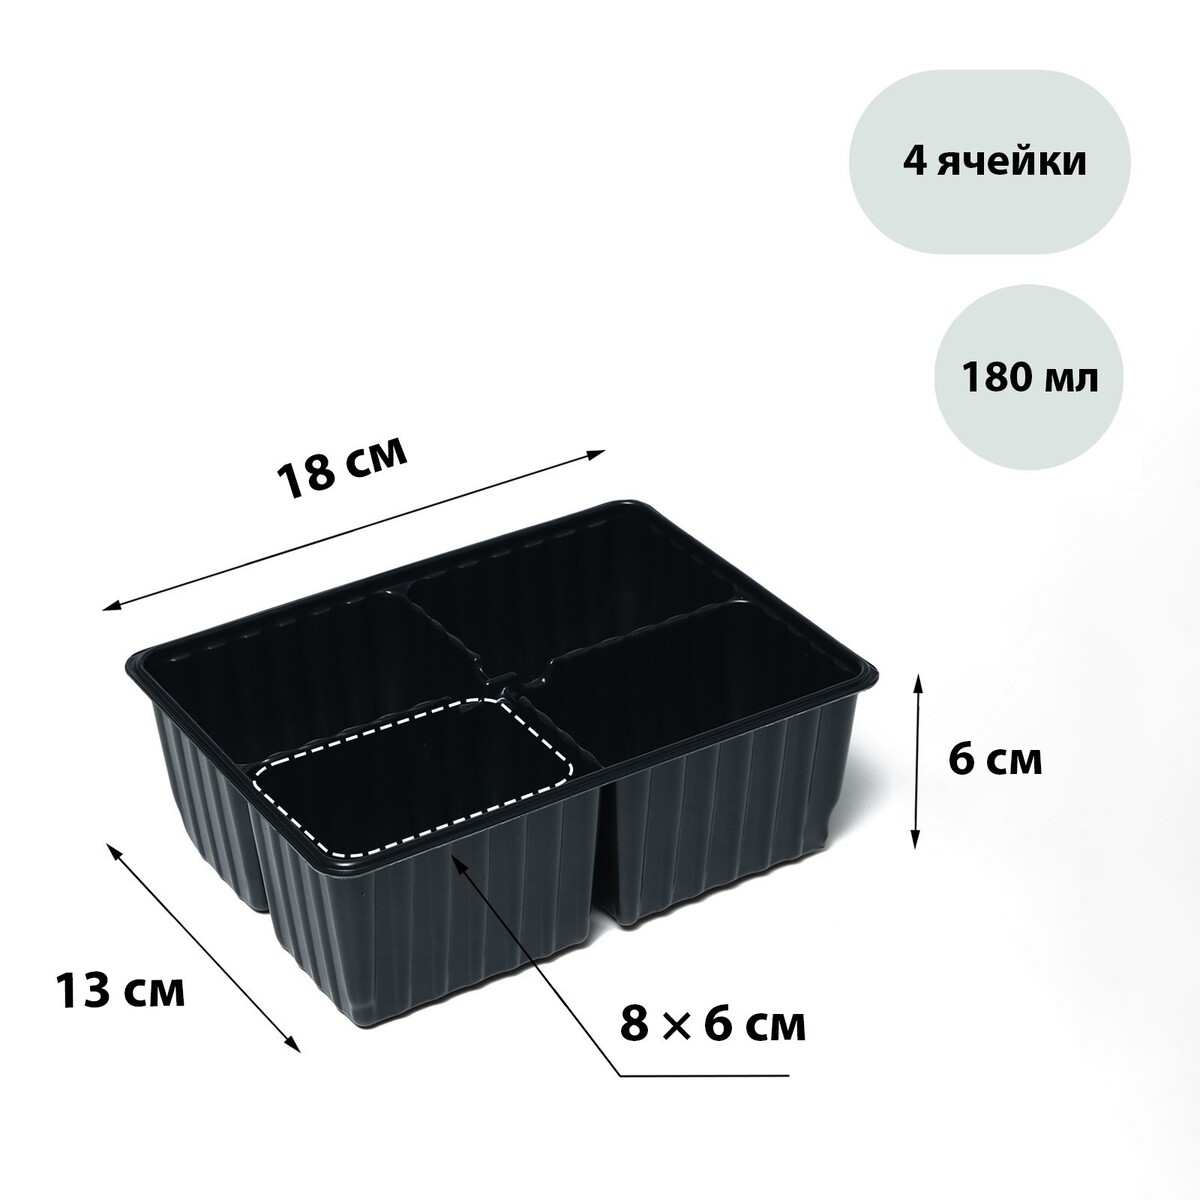 Кассета для рассады, на 4 ячейки, по 180 мл, пластиковая, черная, 18 × 13 × 6 см, в наборе 10 кассет, greengo